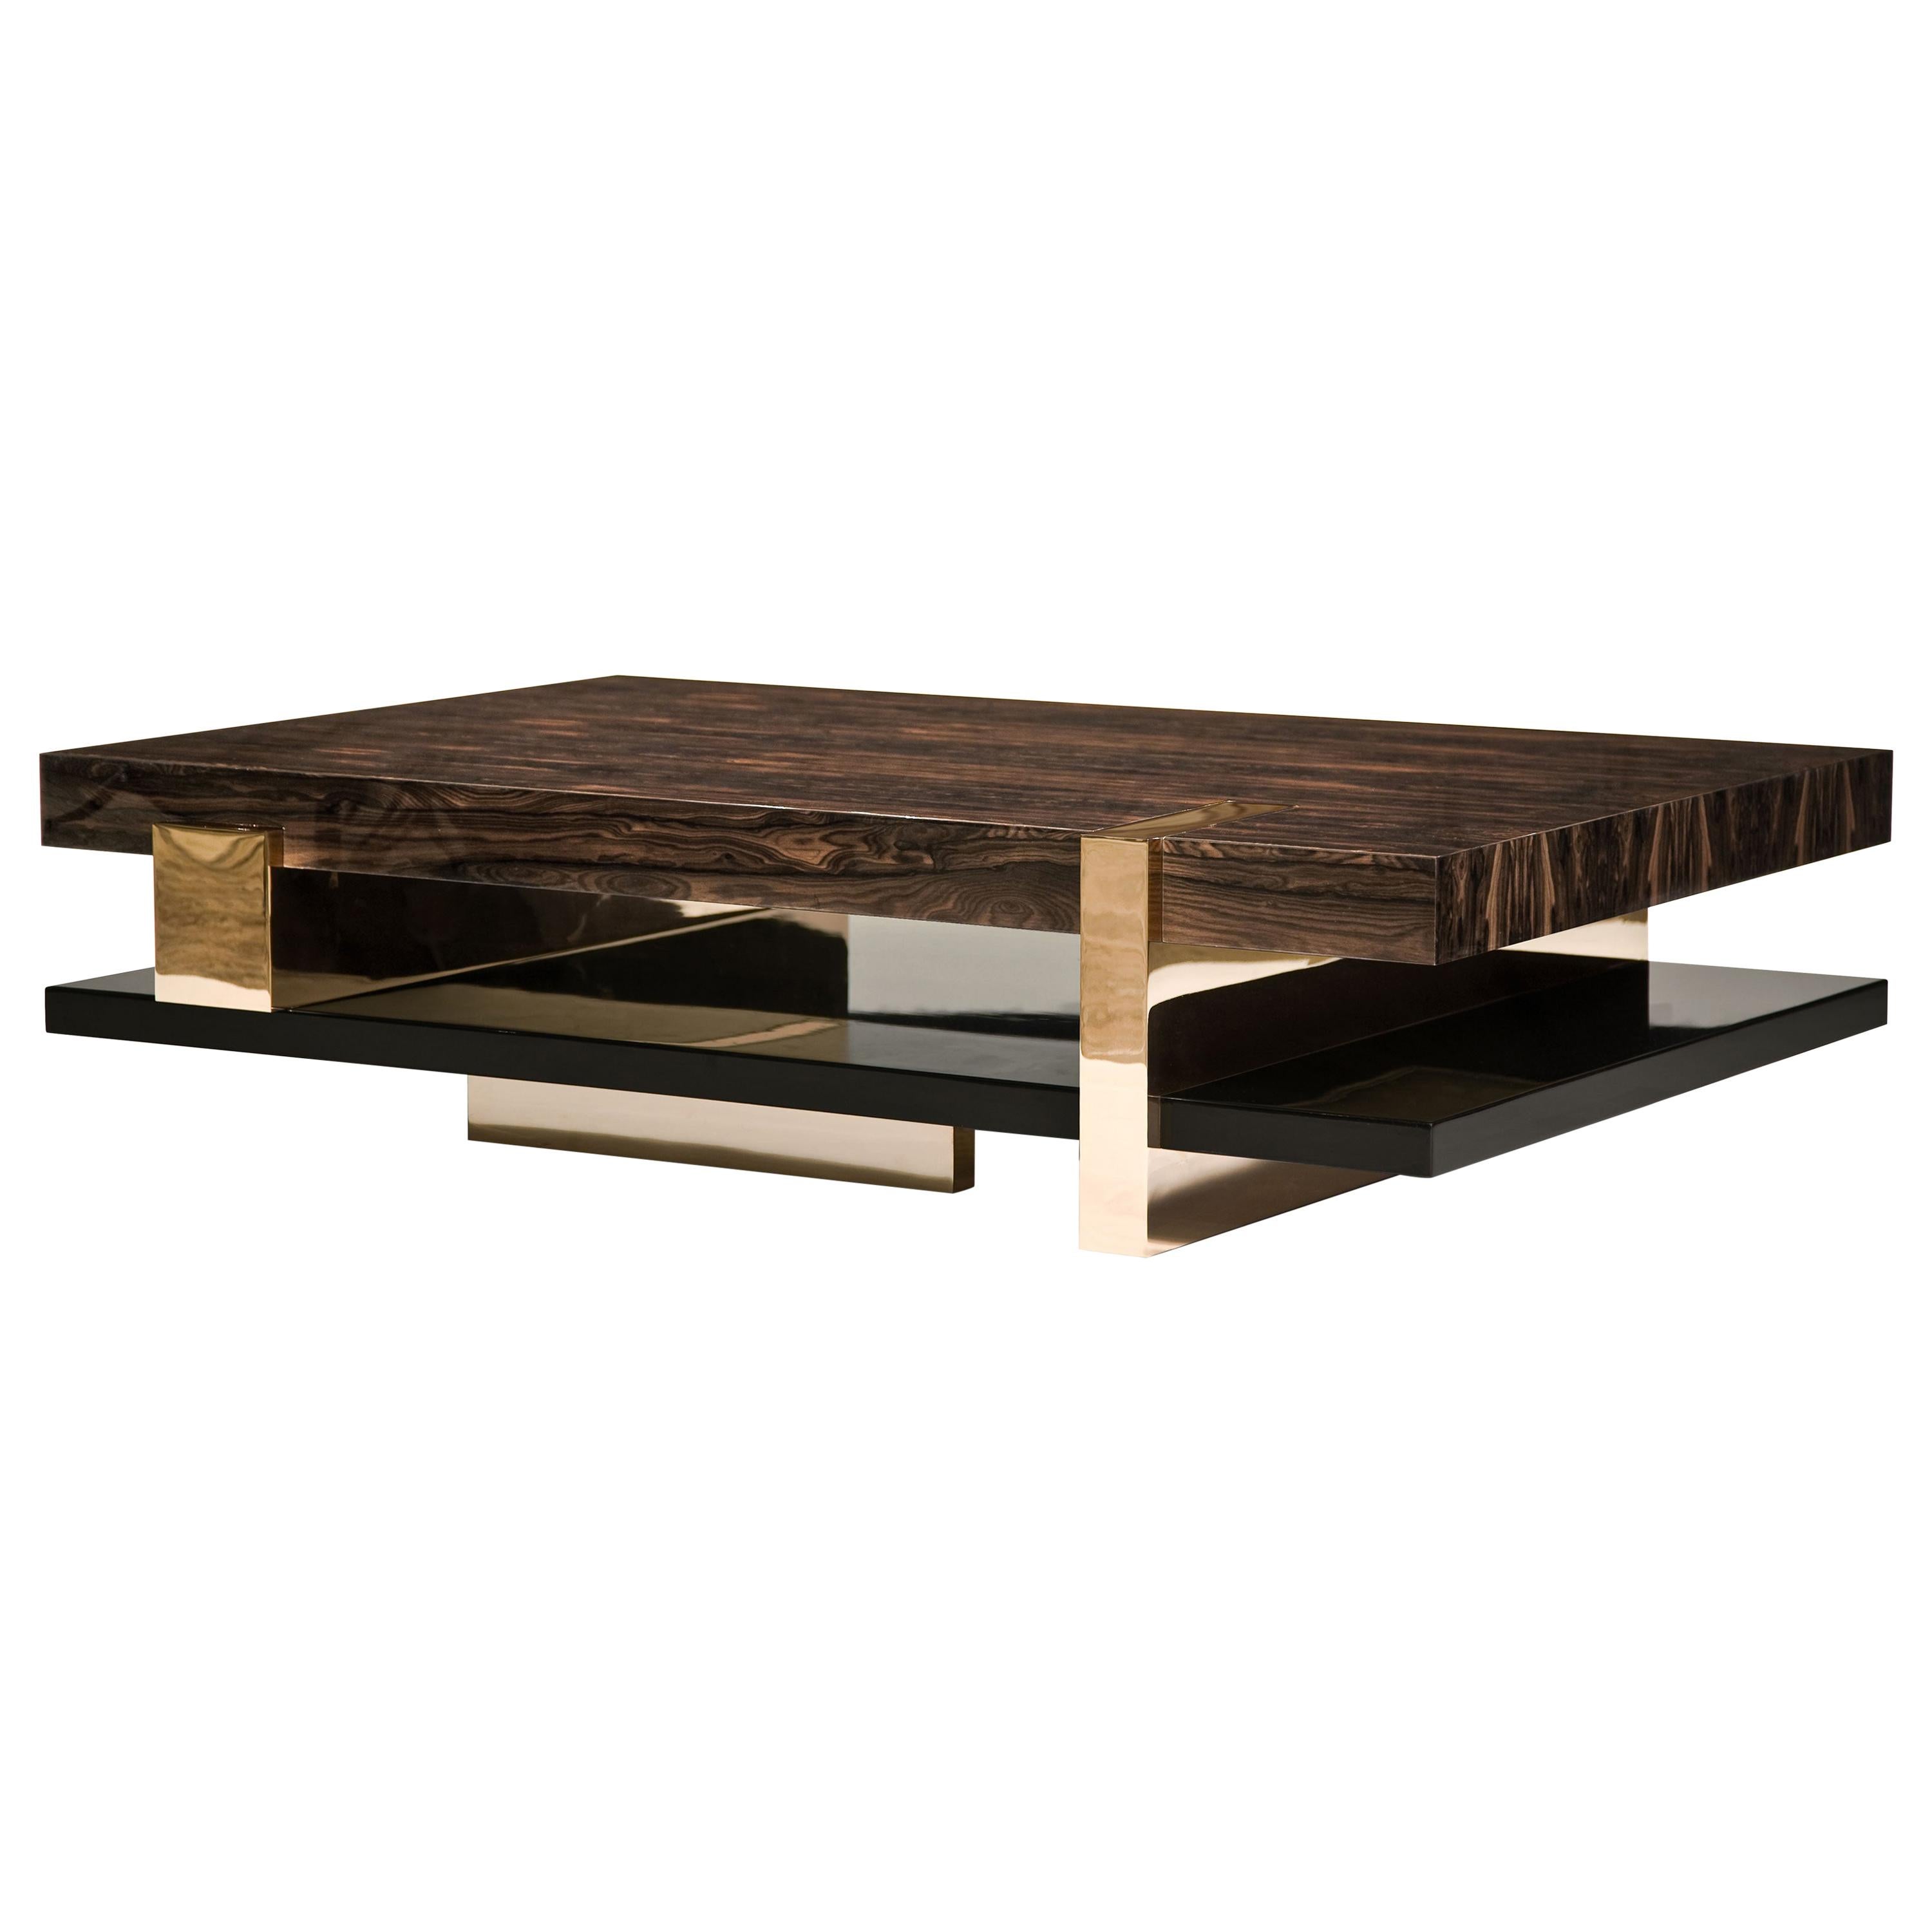 Pierre Couchtisch:  Maßgefertigter Tisch aus Edelstahl, Bronze und Holz